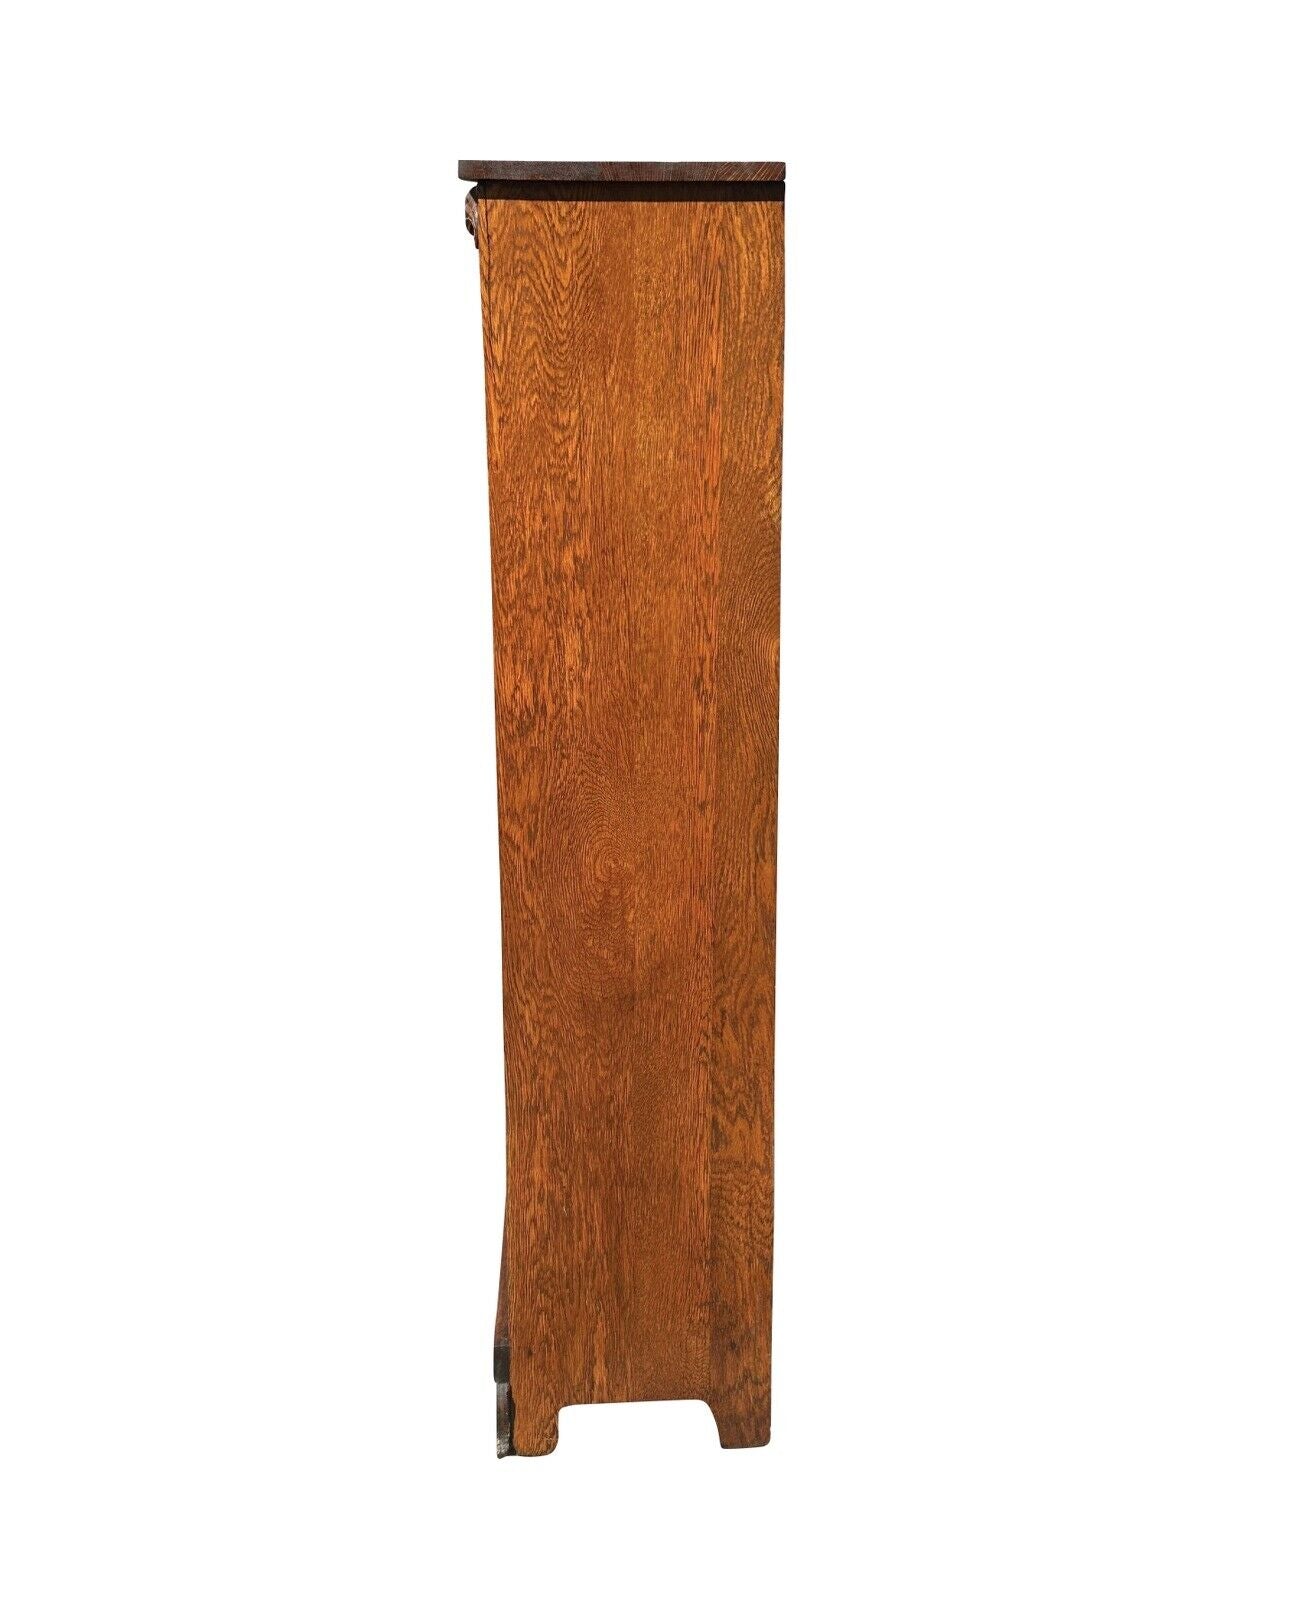 Antique Victorian Oak Carved Single Door Bookcase Cabinet With Adjusting Shelves